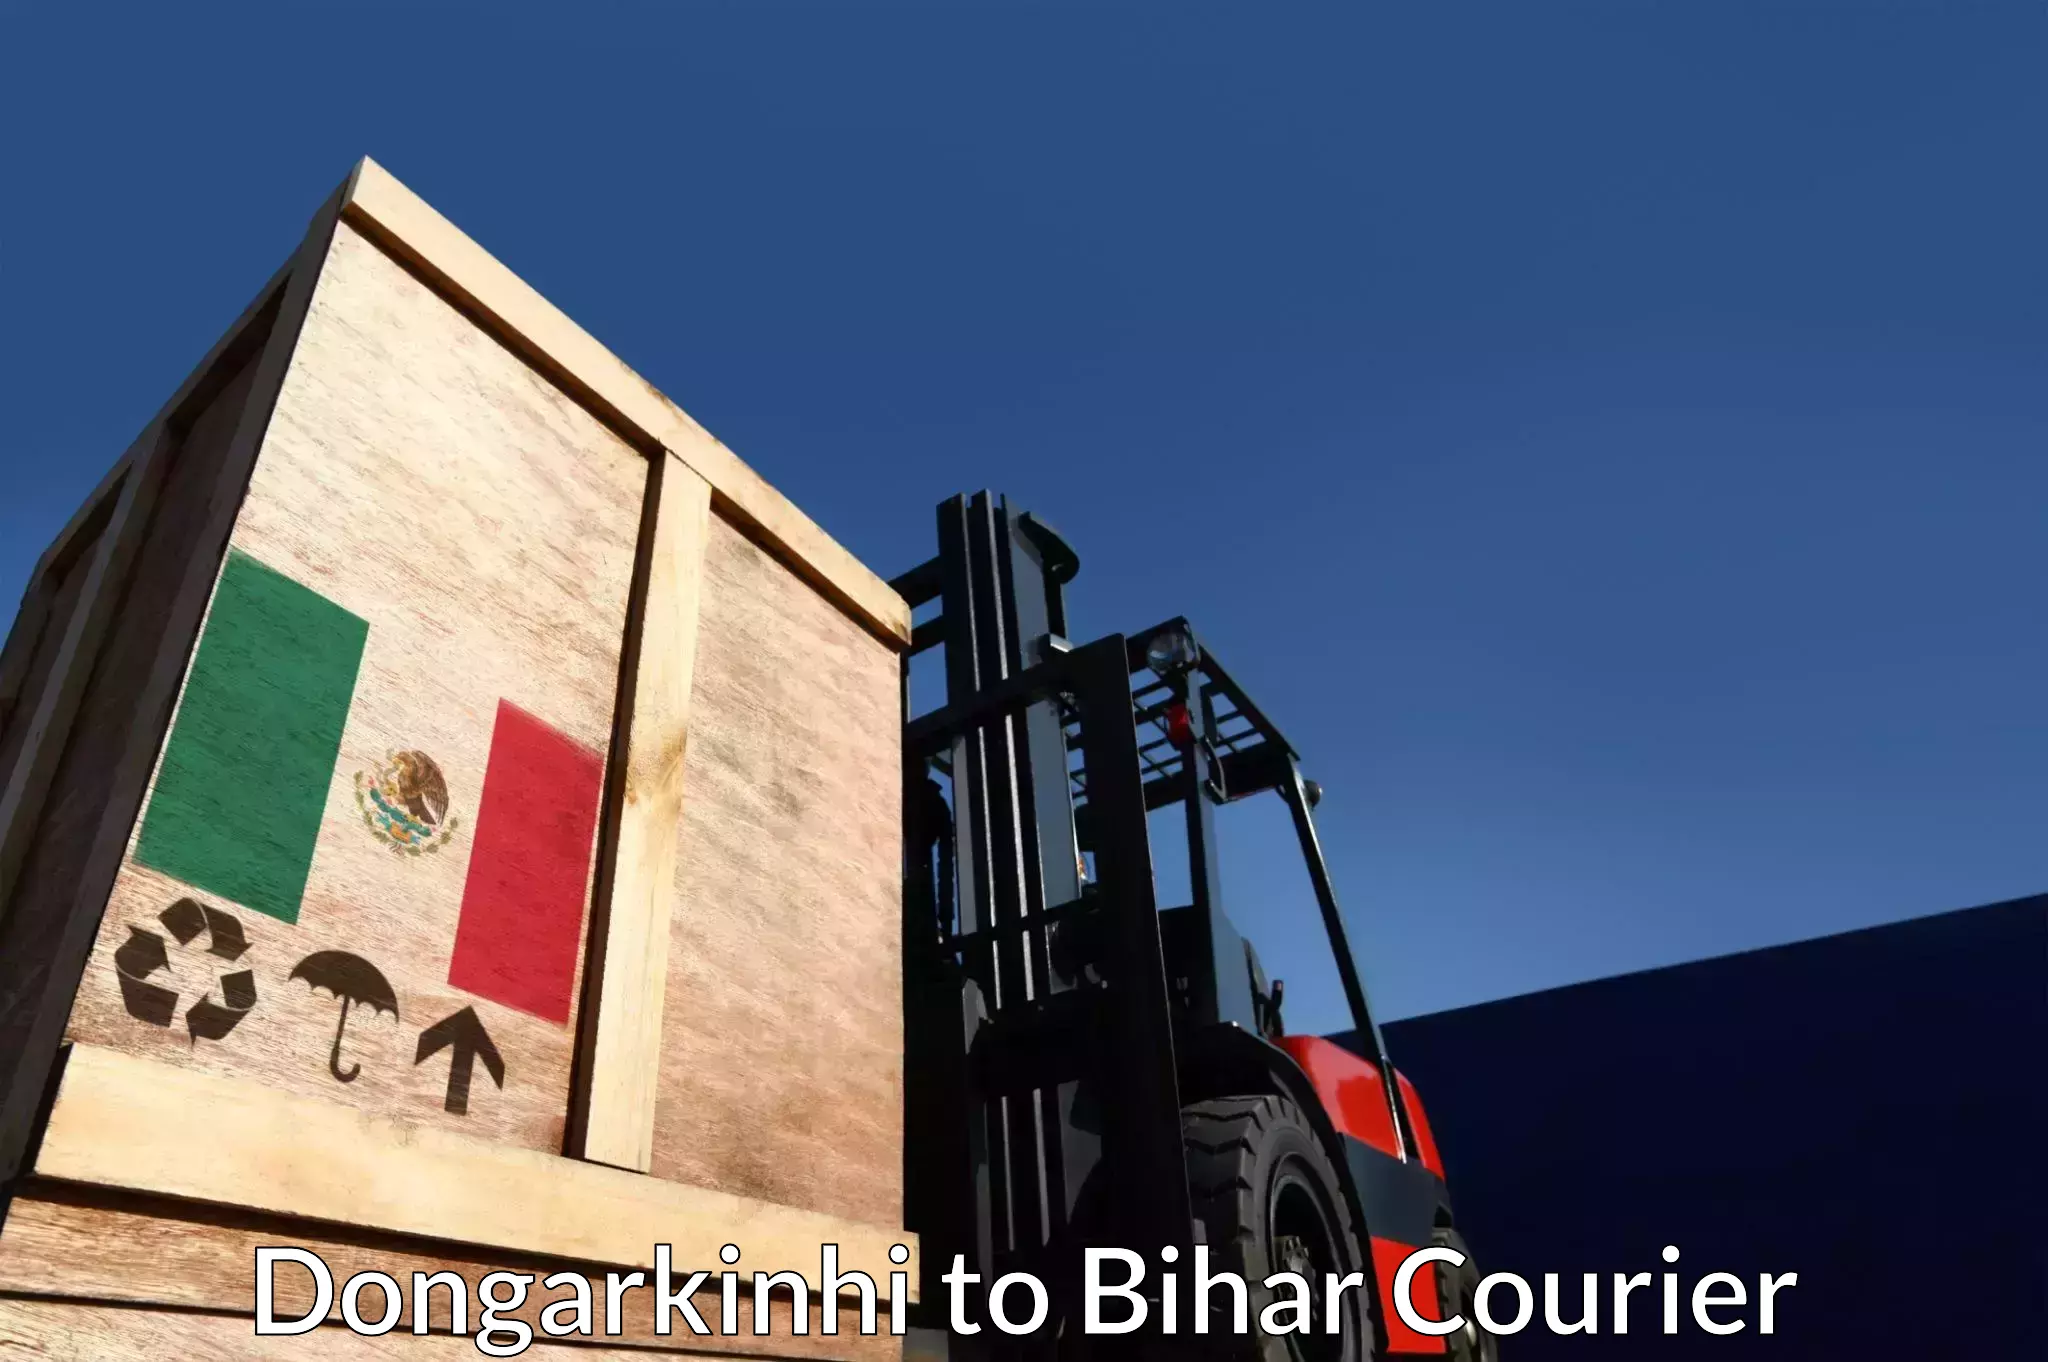 Urgent courier needs Dongarkinhi to Bihar